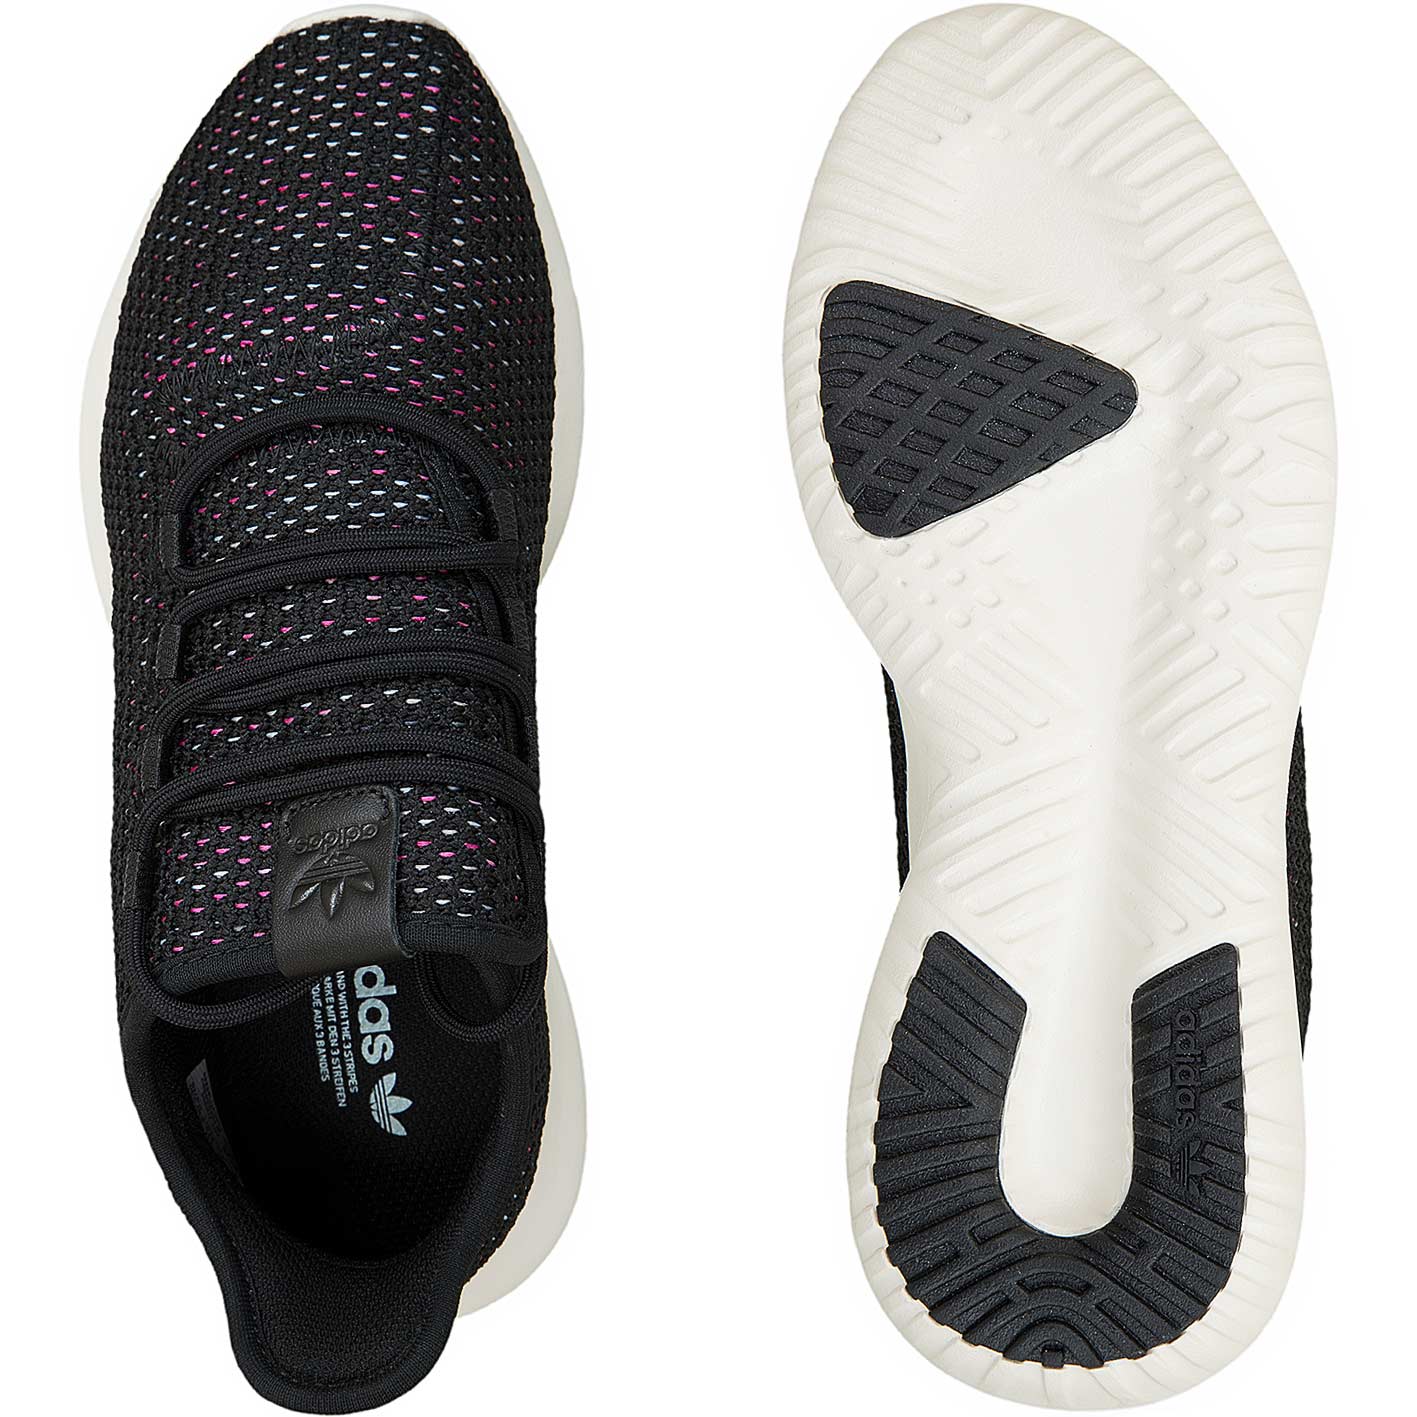 ☆ Adidas Damen Sneaker Tubular Shadow CK schwarz/weiß - hier bestellen!